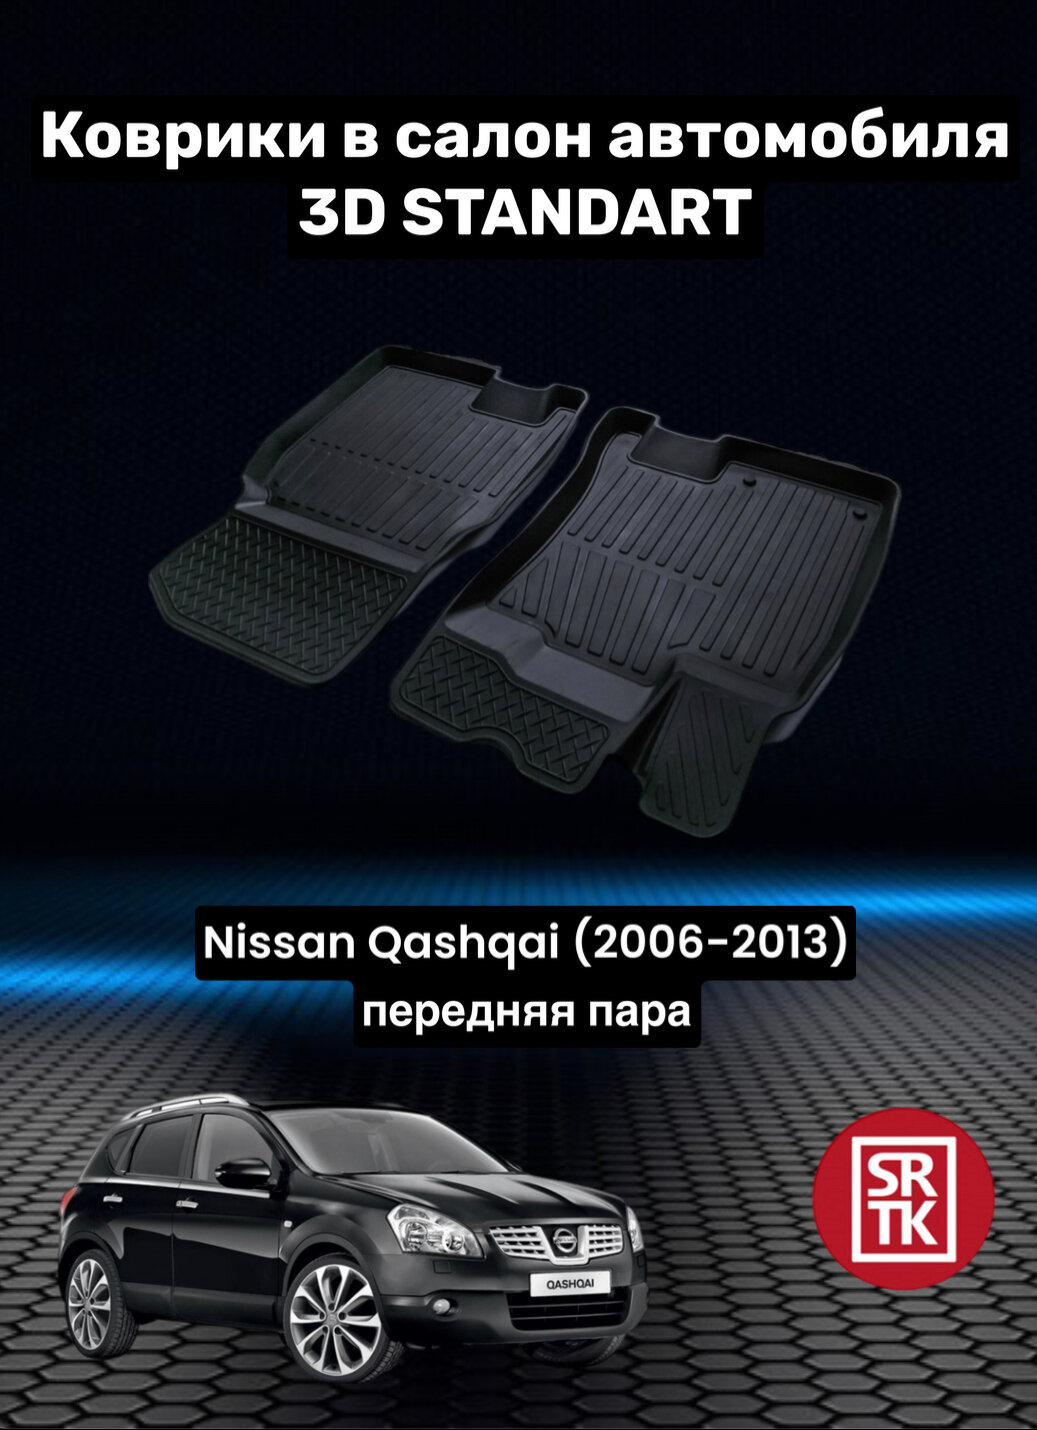 Коврики резиновые в салон для Ниссан Кашкай / Nissan Qashqai (2006-2013) 3D Standart SRTK (Саранск) передняя пара